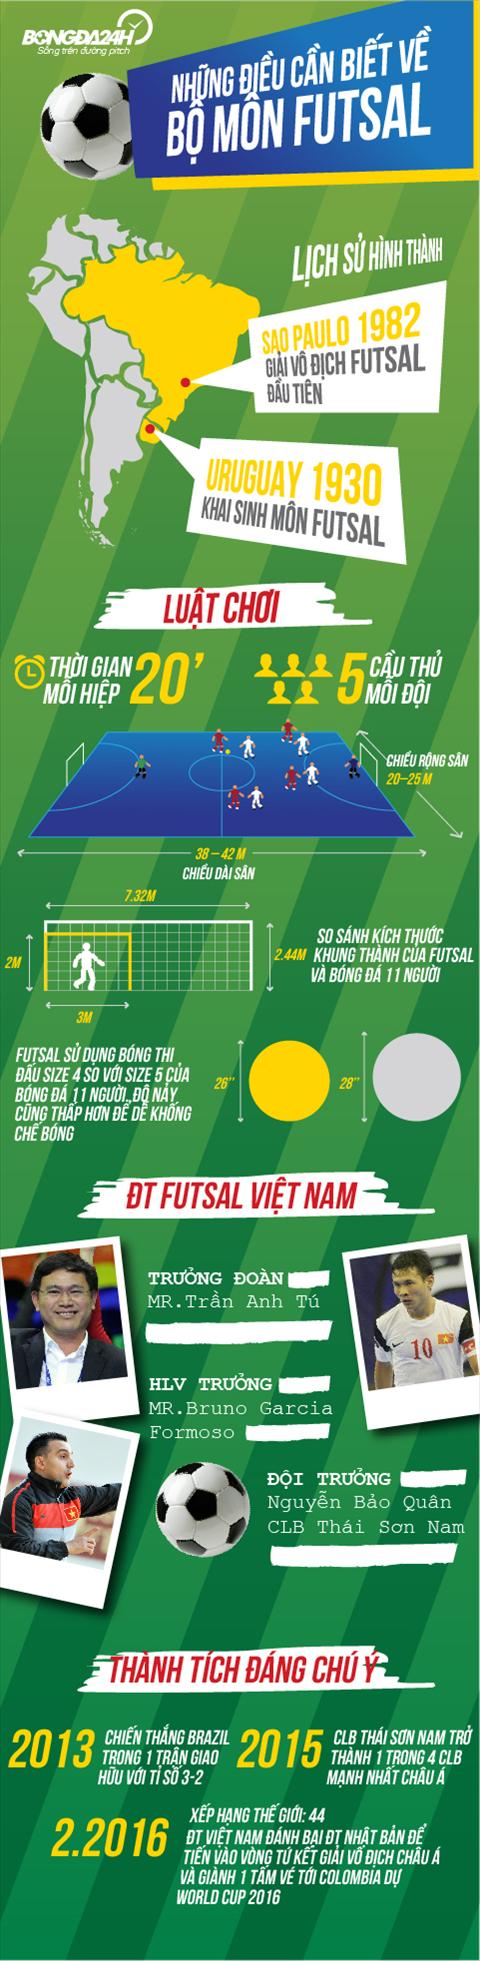 Infographic nhung dieu can biet ve Futsal